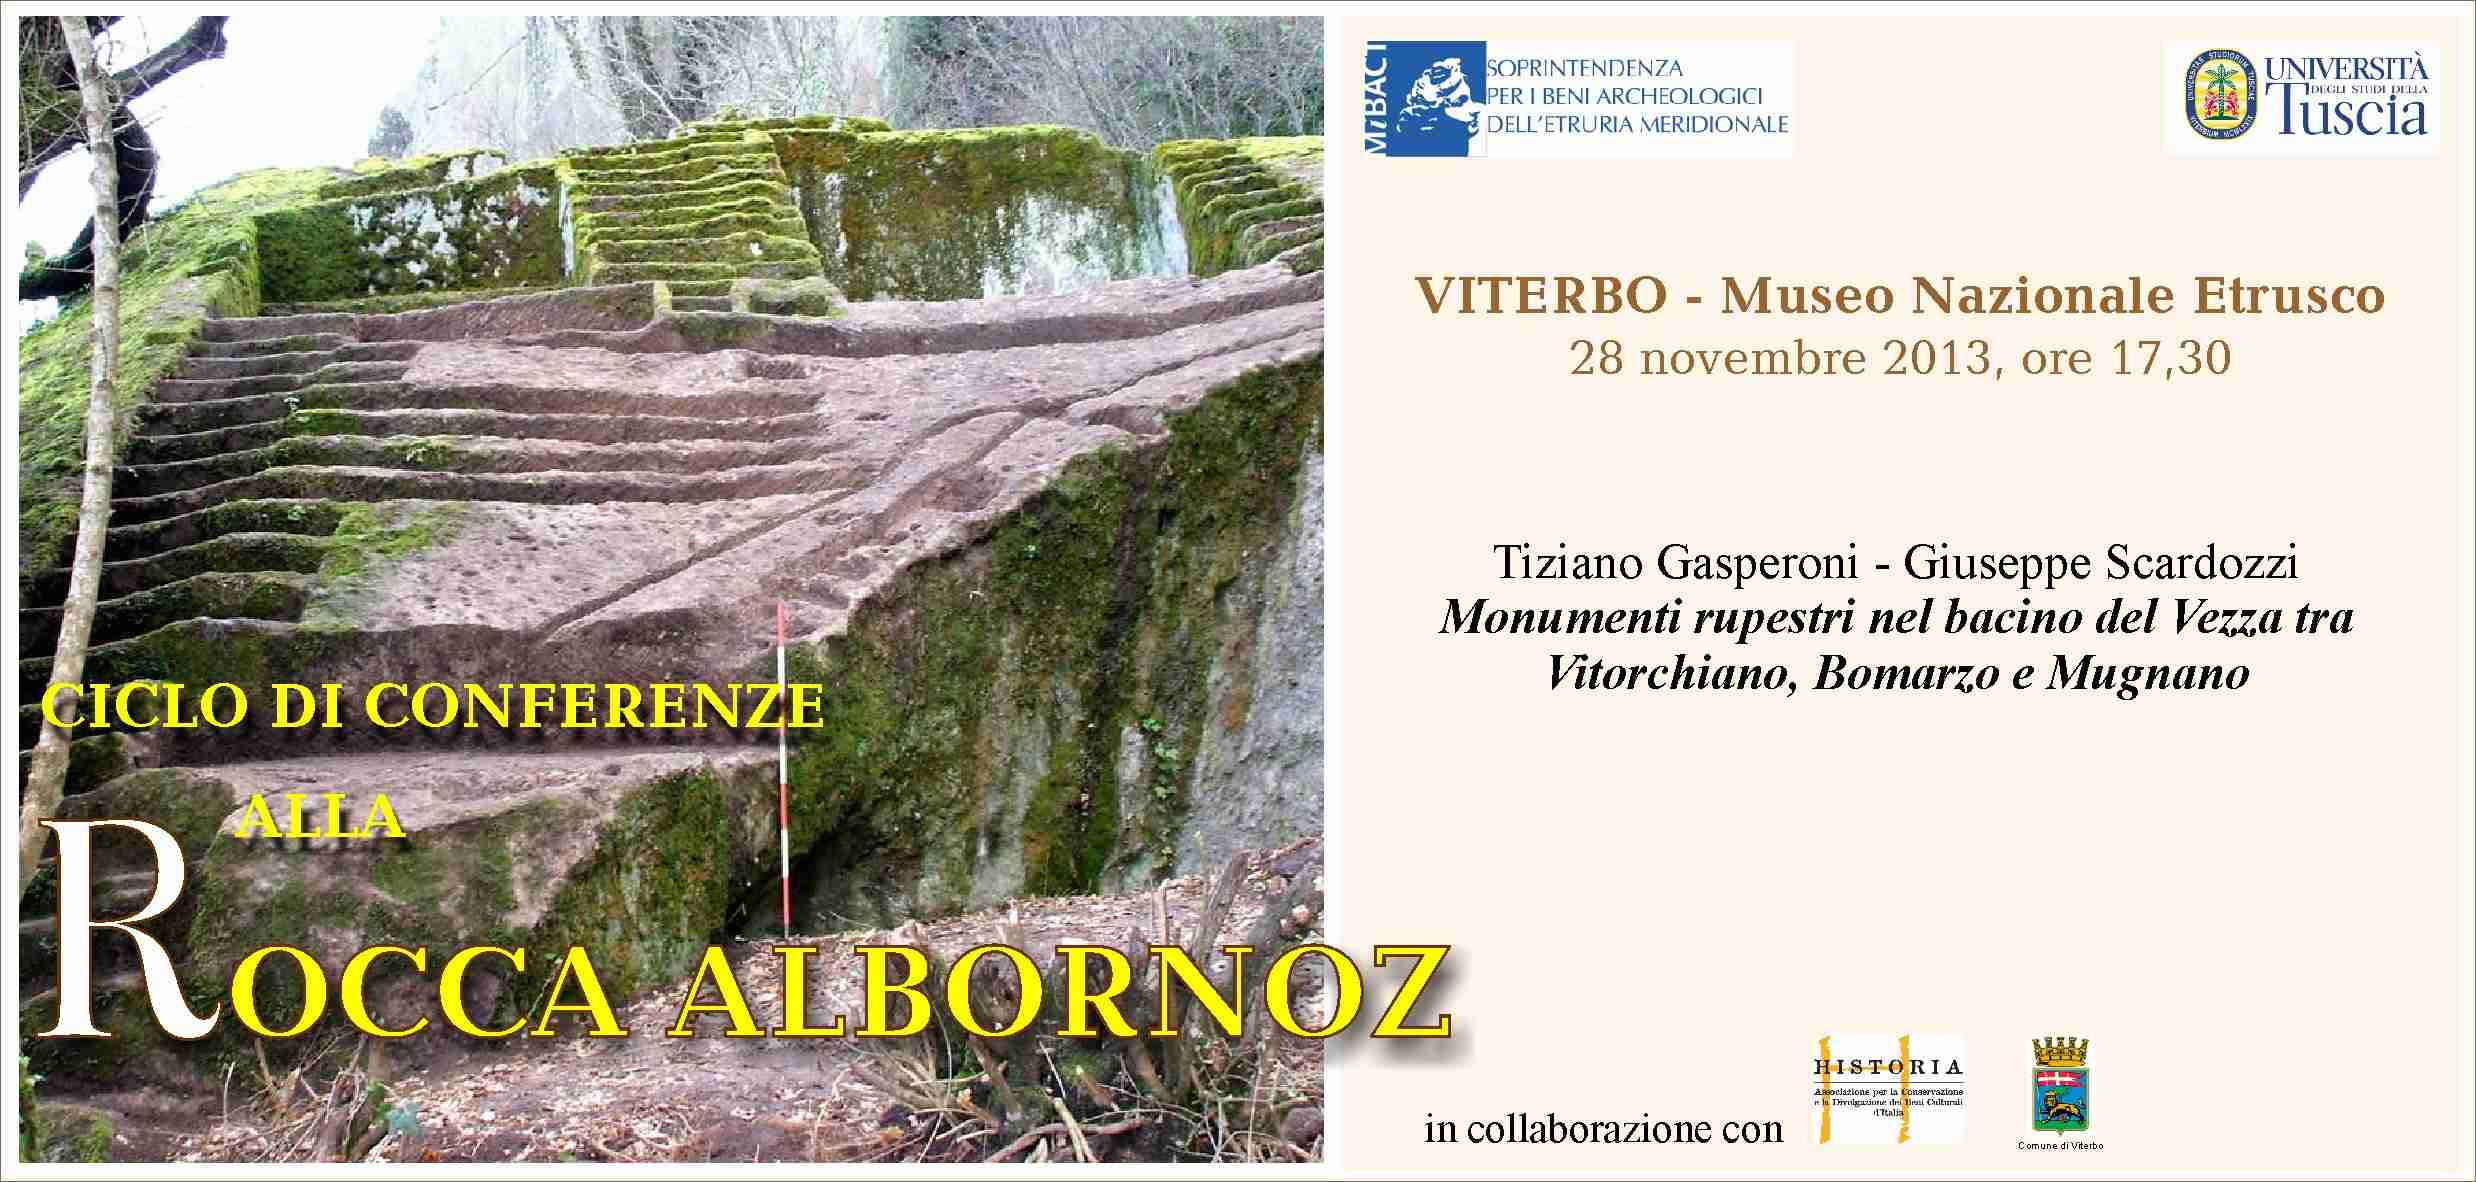 Nuova conferenza alla Rocca Albornoz di  Viterbo giovedì 28 novembre